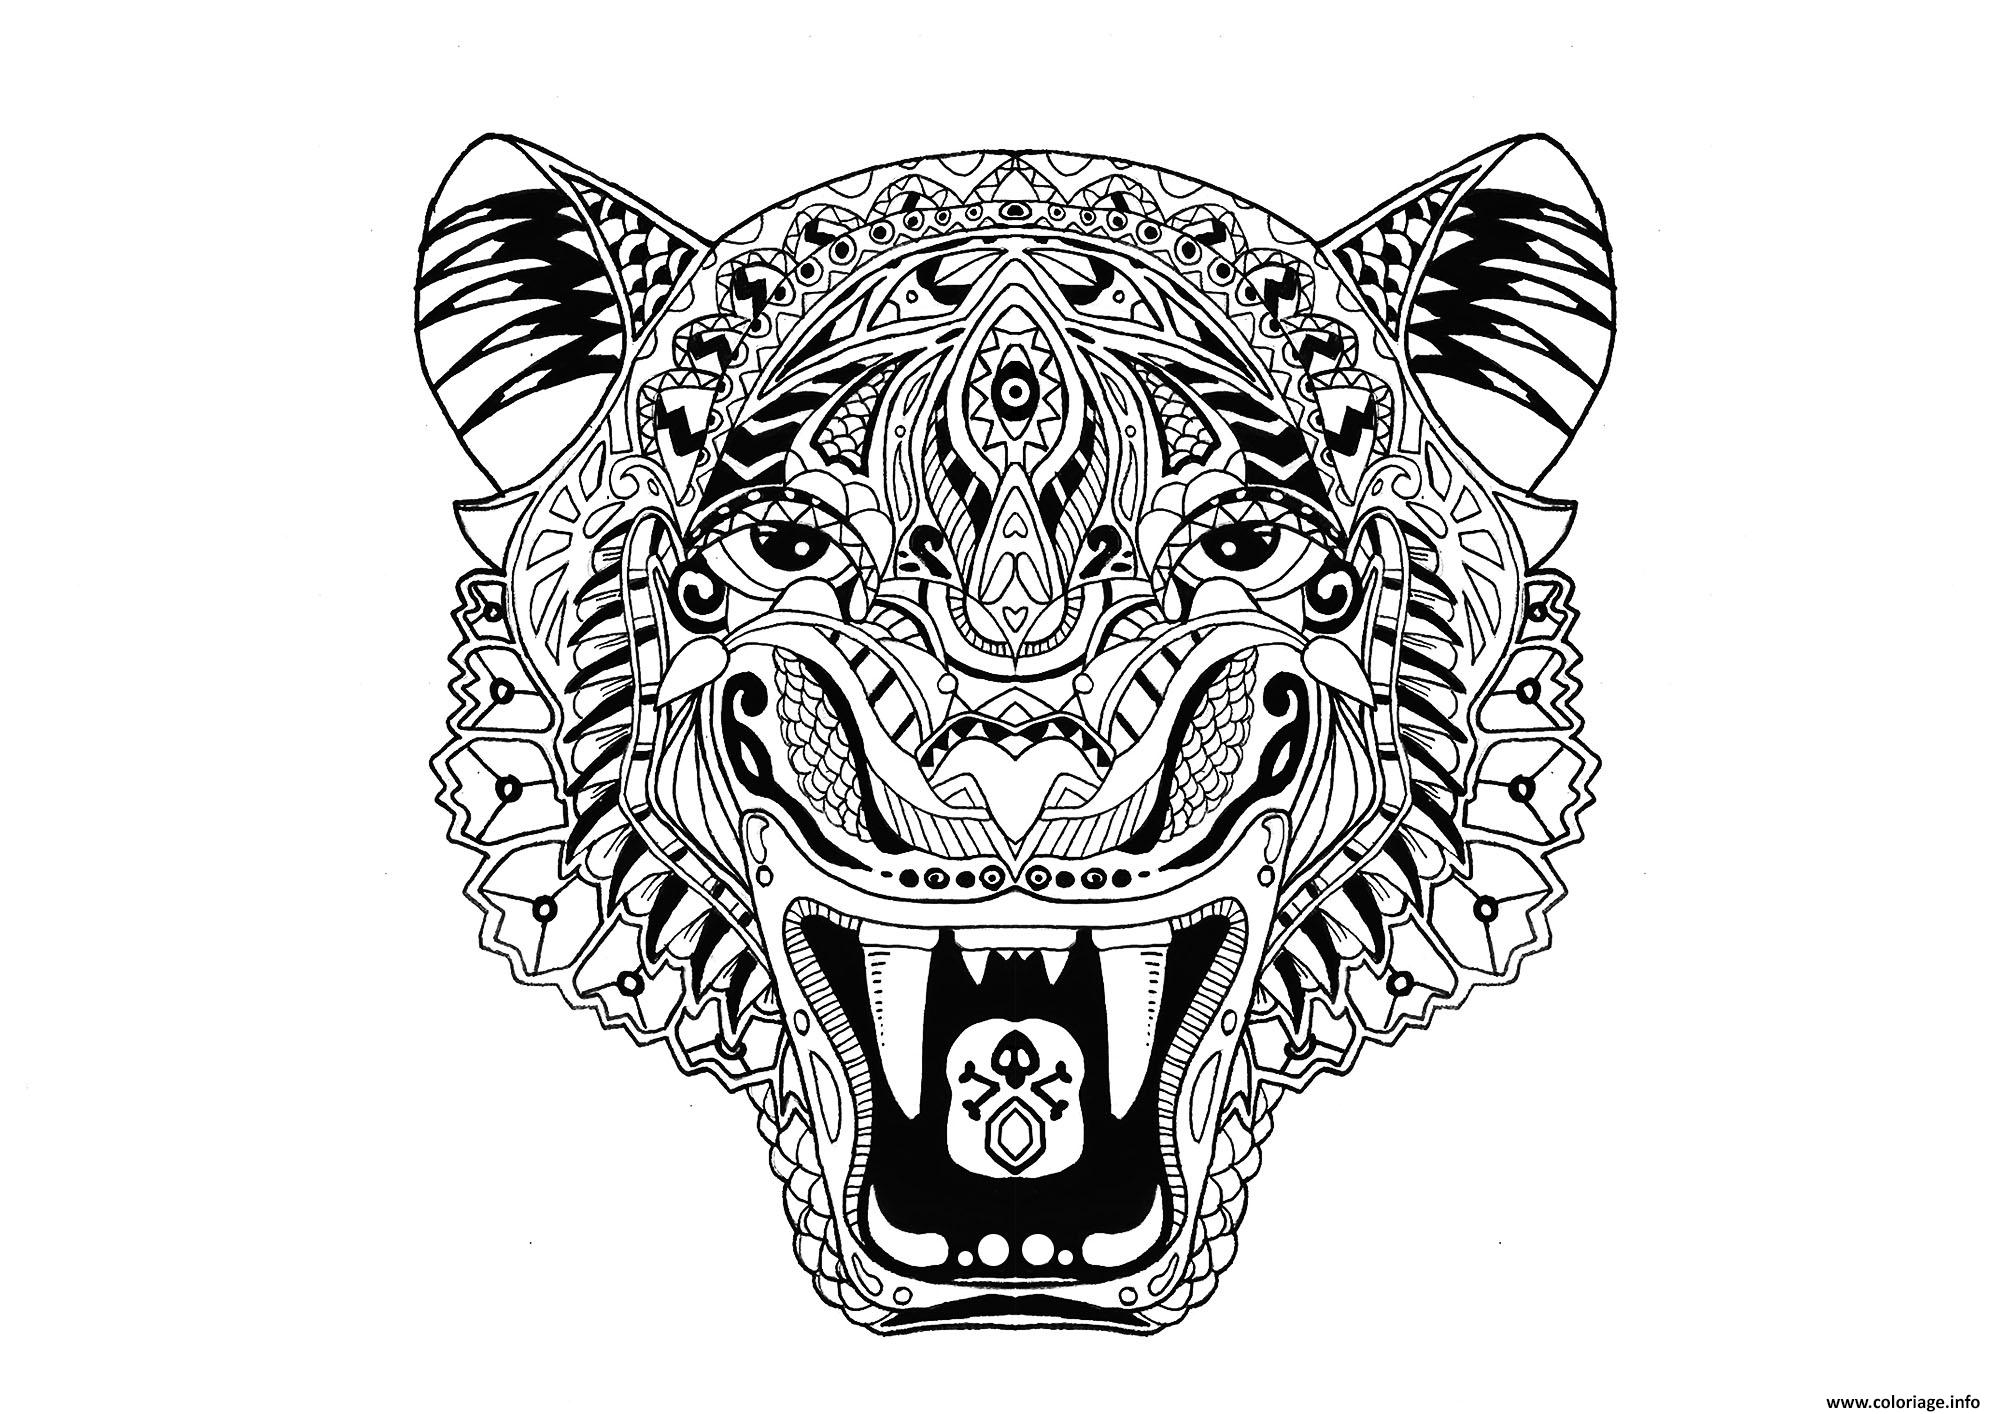 Coloriage Tigre Adulte Animal Dessin Tigre À Imprimer concernant Coloriagea Imprimer